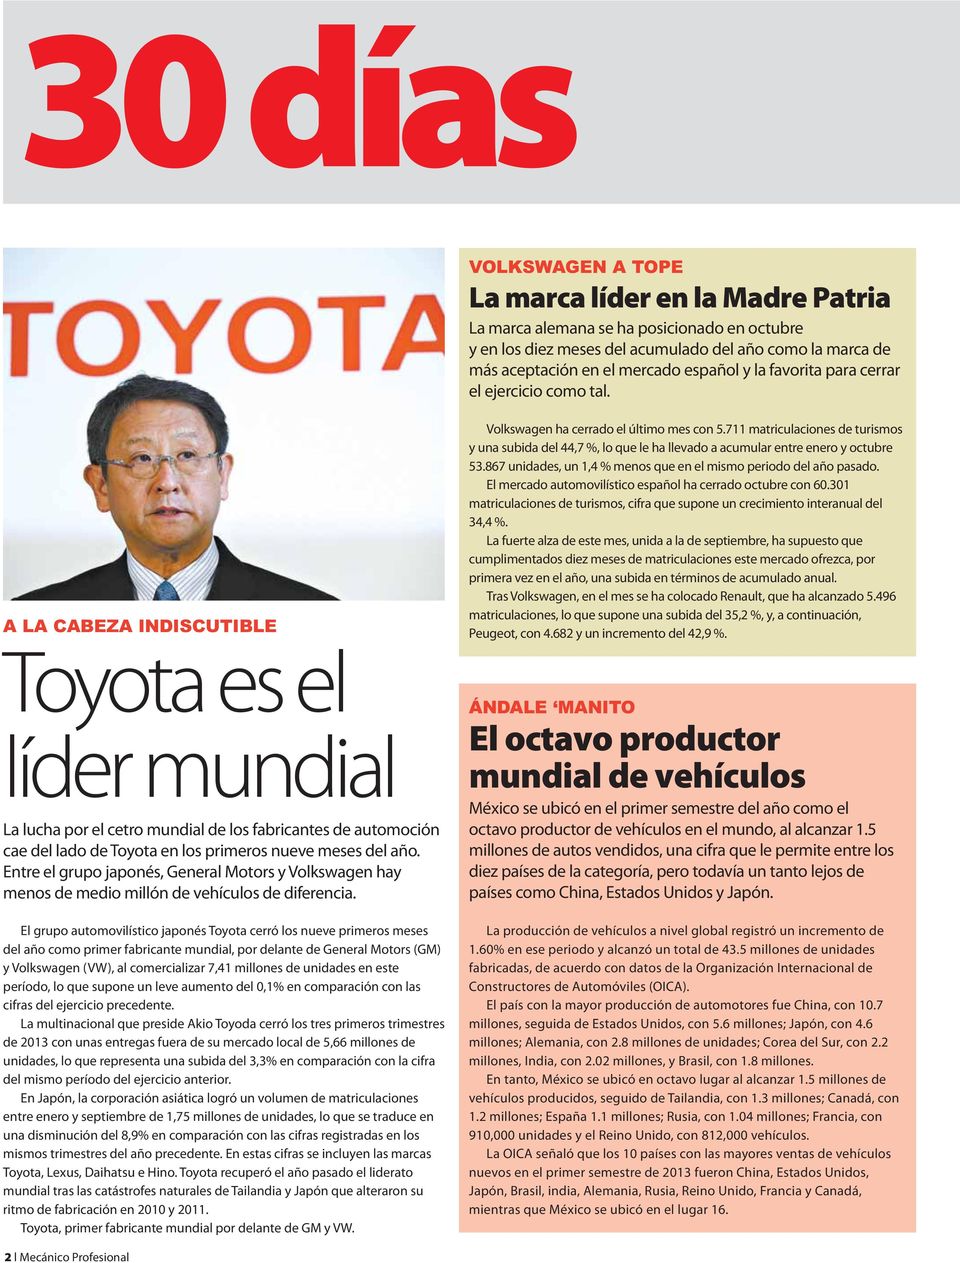 A LA CABEZA INDISCUTIBLE Toyota es el líder mundial La lucha por el cetro mundial de los fabricantes de automoción cae del lado de Toyota en los primeros nueve meses del año.